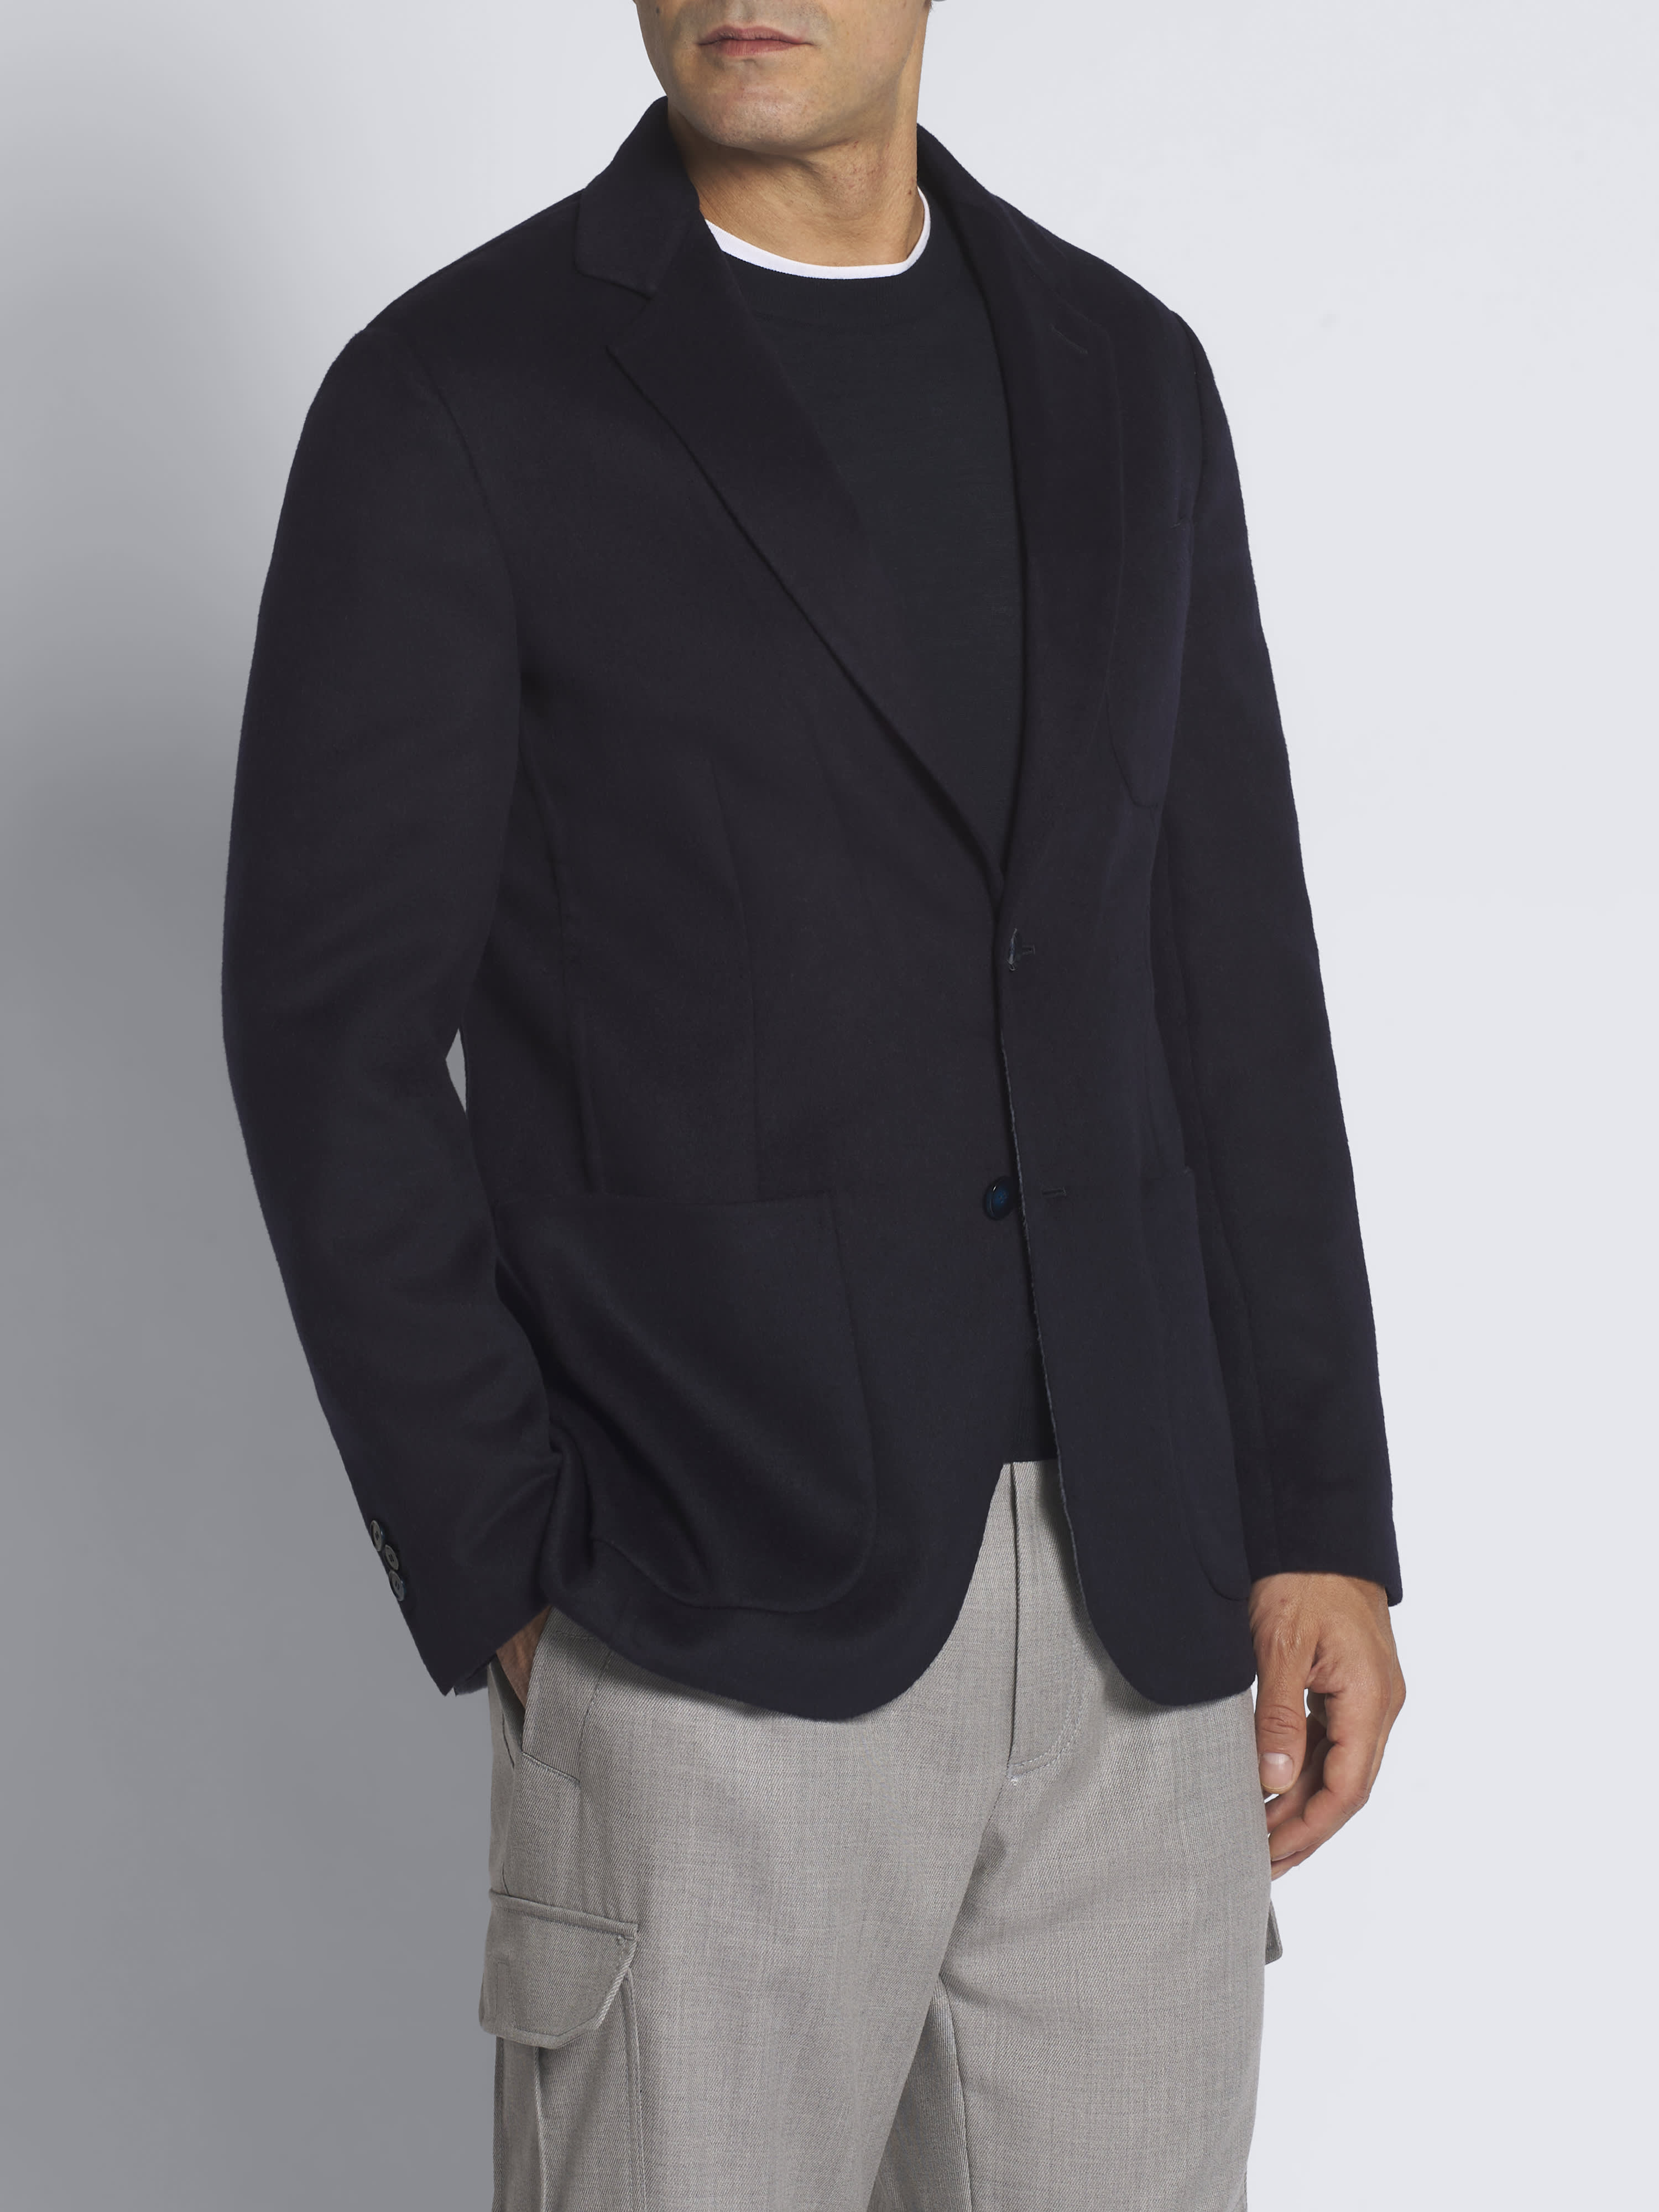 Beige suede Monti blazer  Brioni® US Official Store